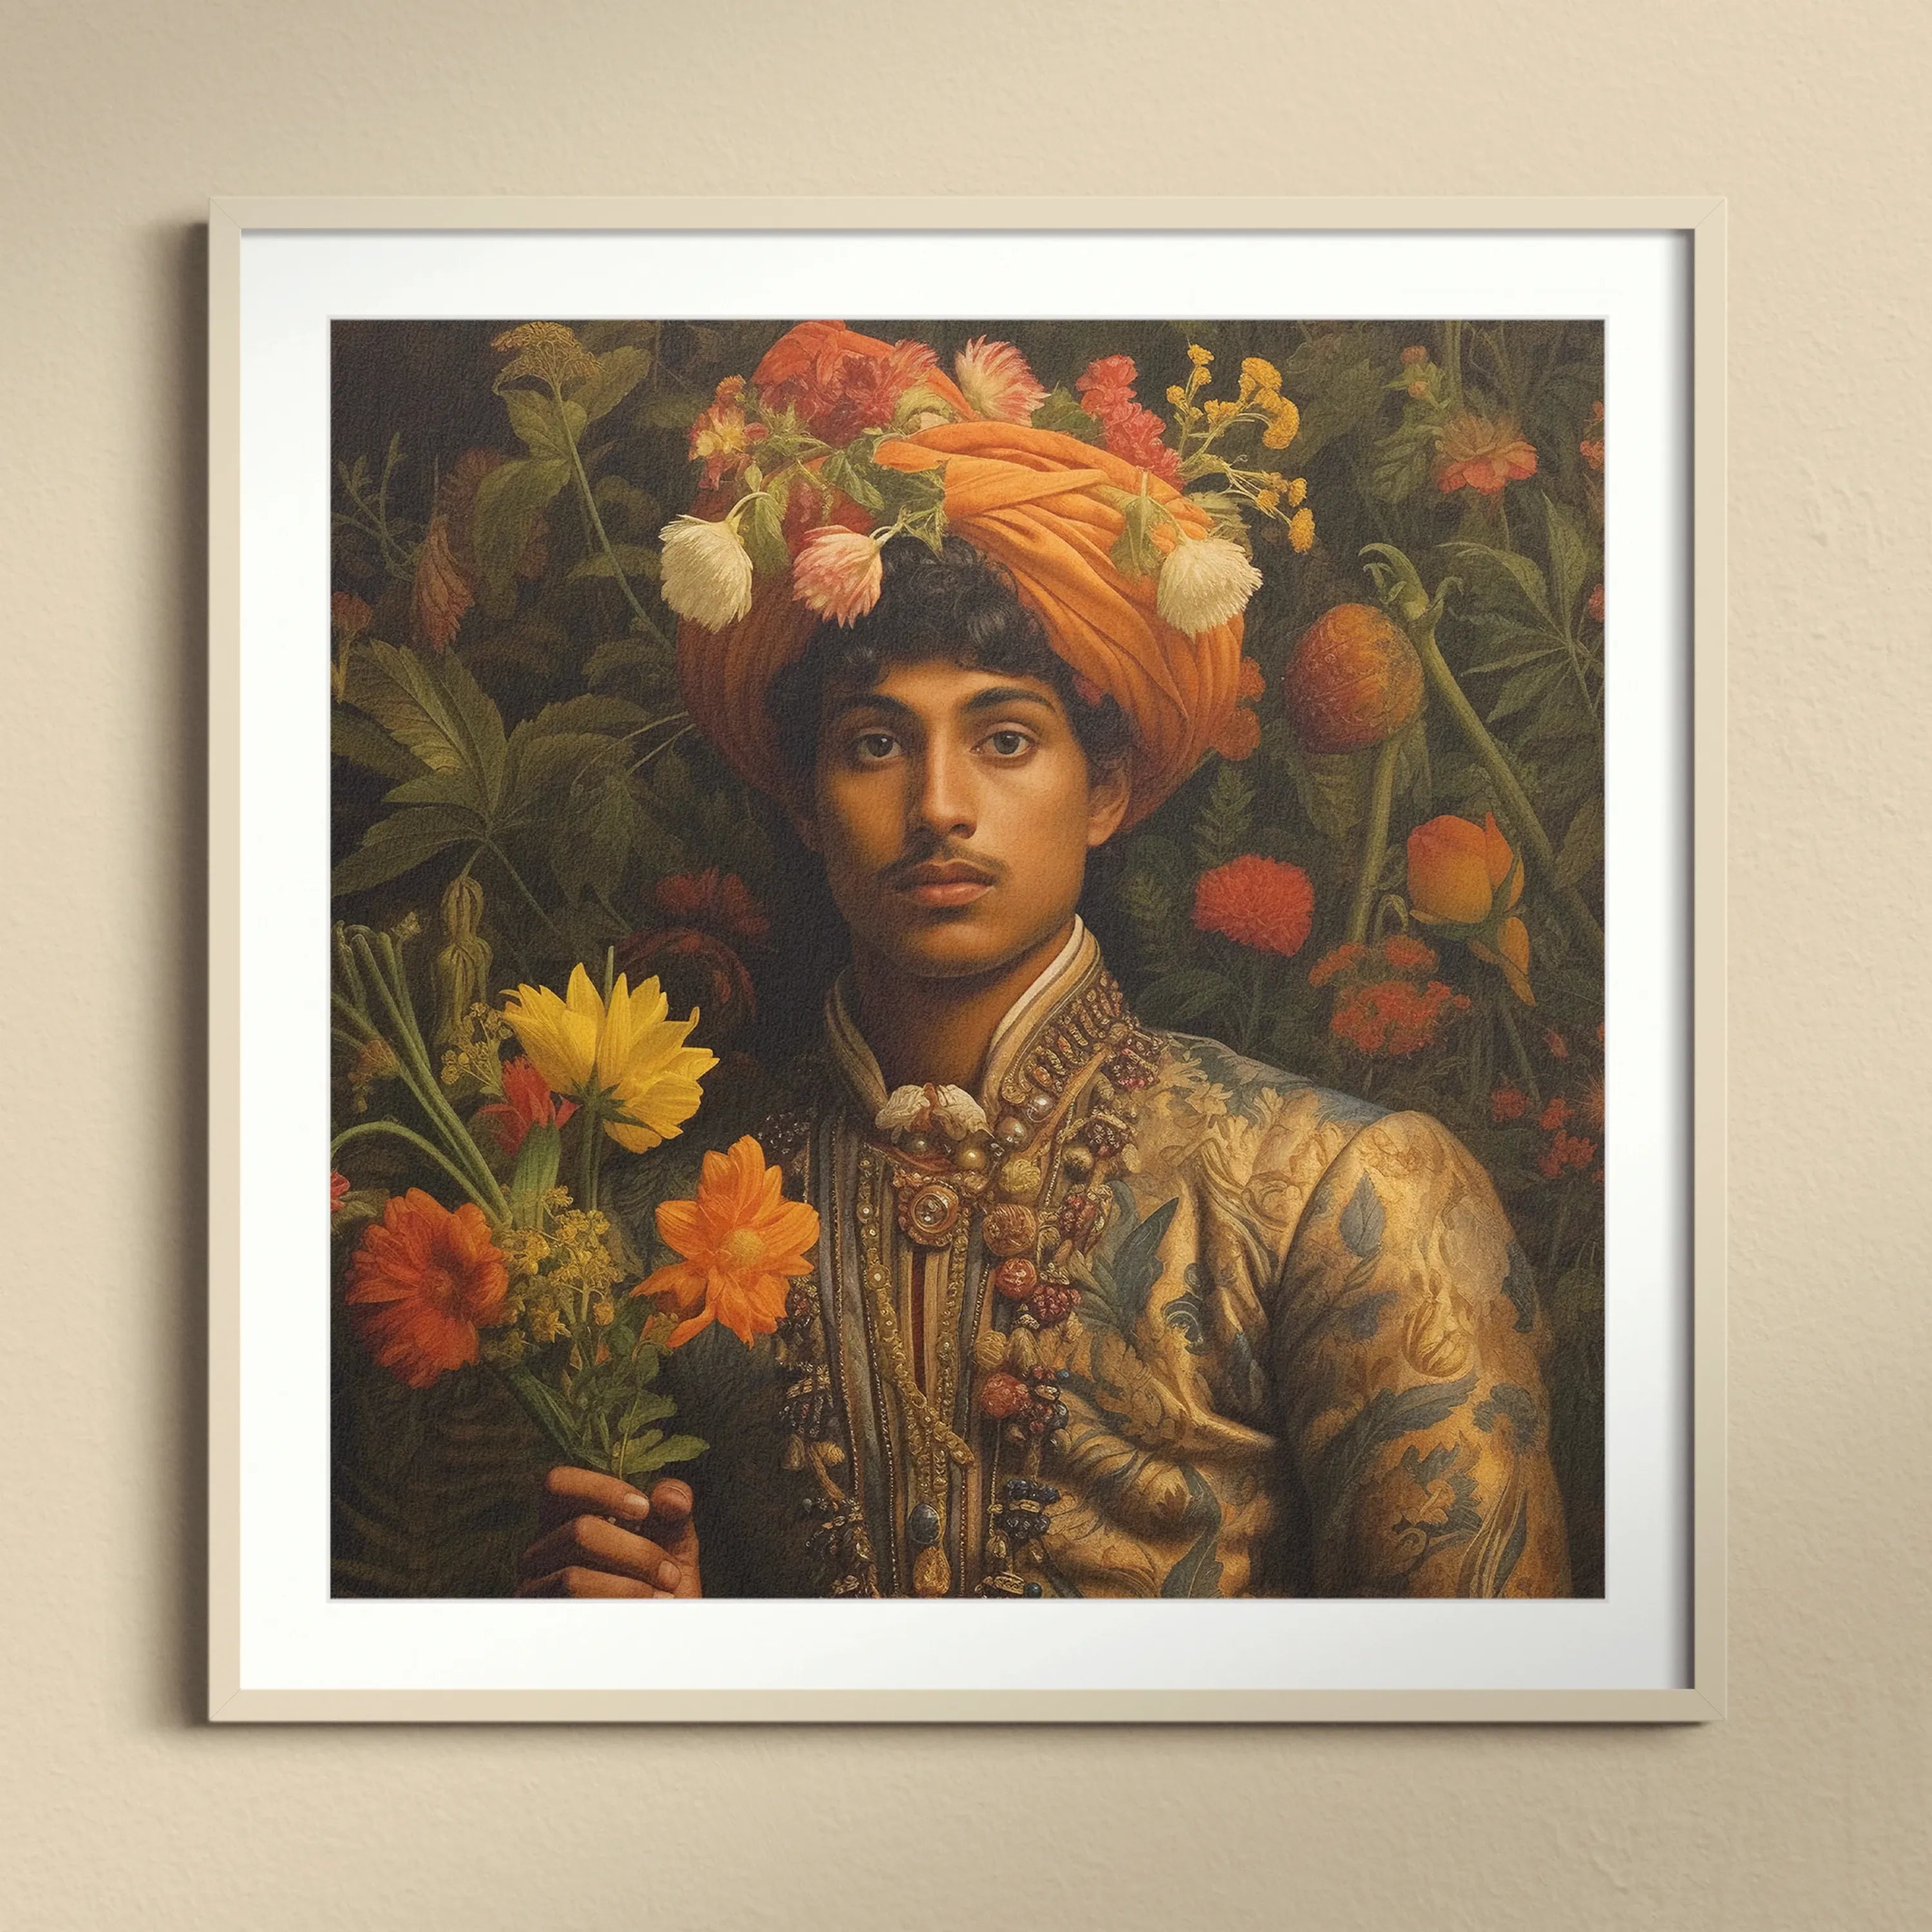 Prince Rajanikanta - Gay India Tamil Royalty Queerart Print - 16’x16’ - Posters Prints & Visual Artwork - Aesthetic Art